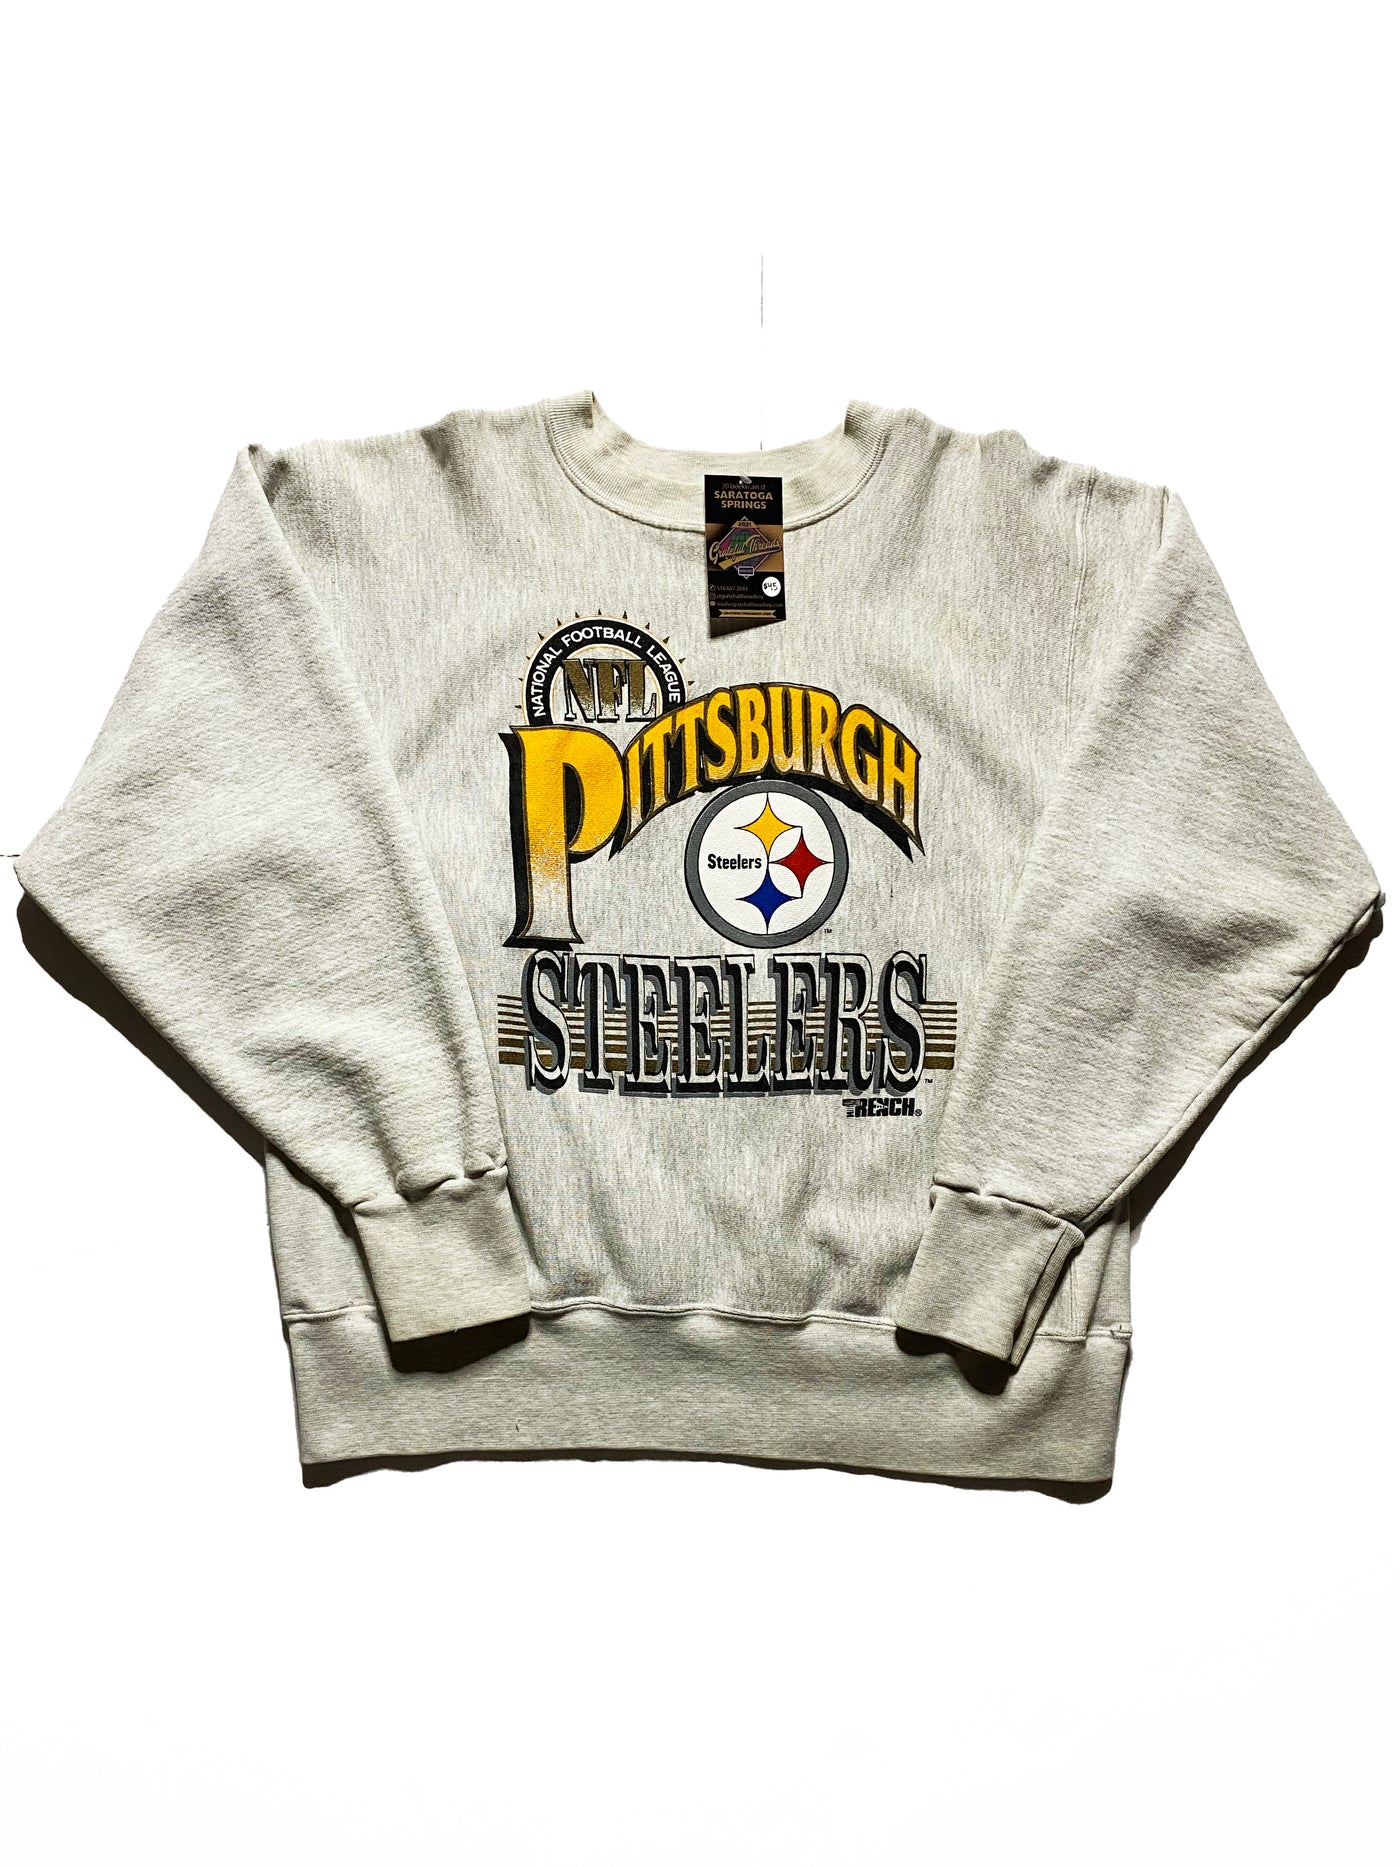 Vintage 90s Pittsburgh Steelers Crewneck